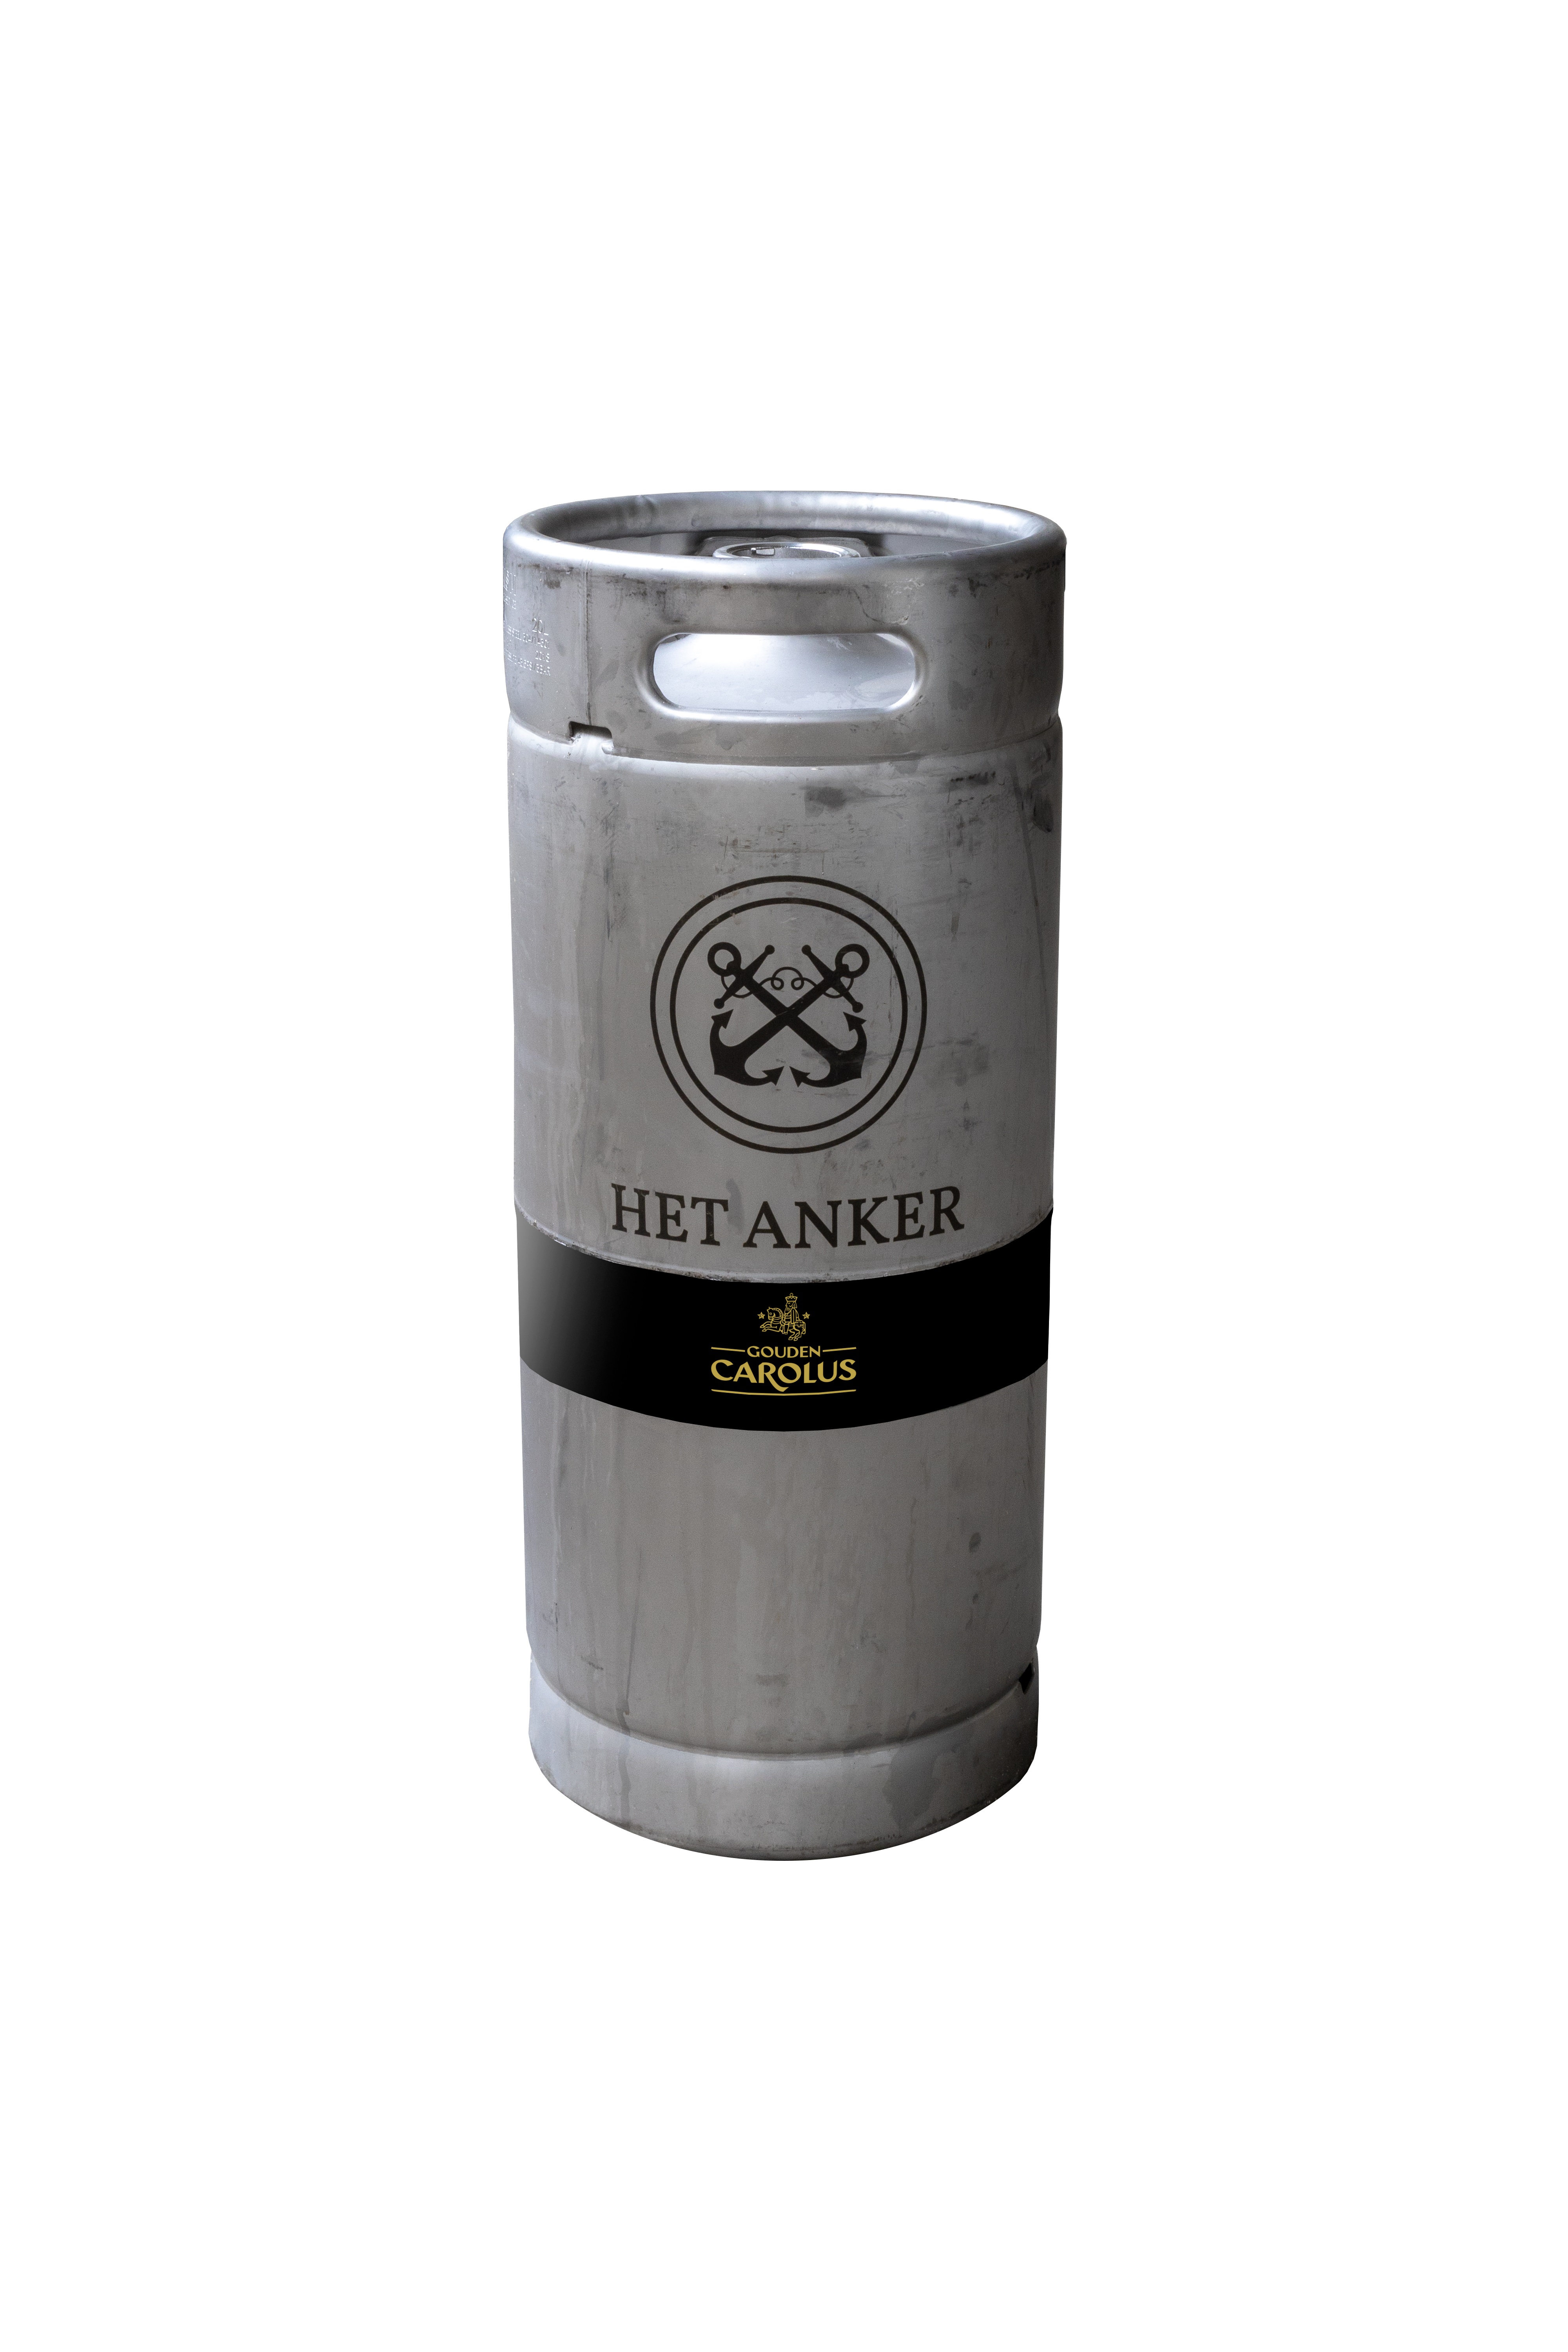 78752 Gouden Carolus imperial dark bier fust 20 liter